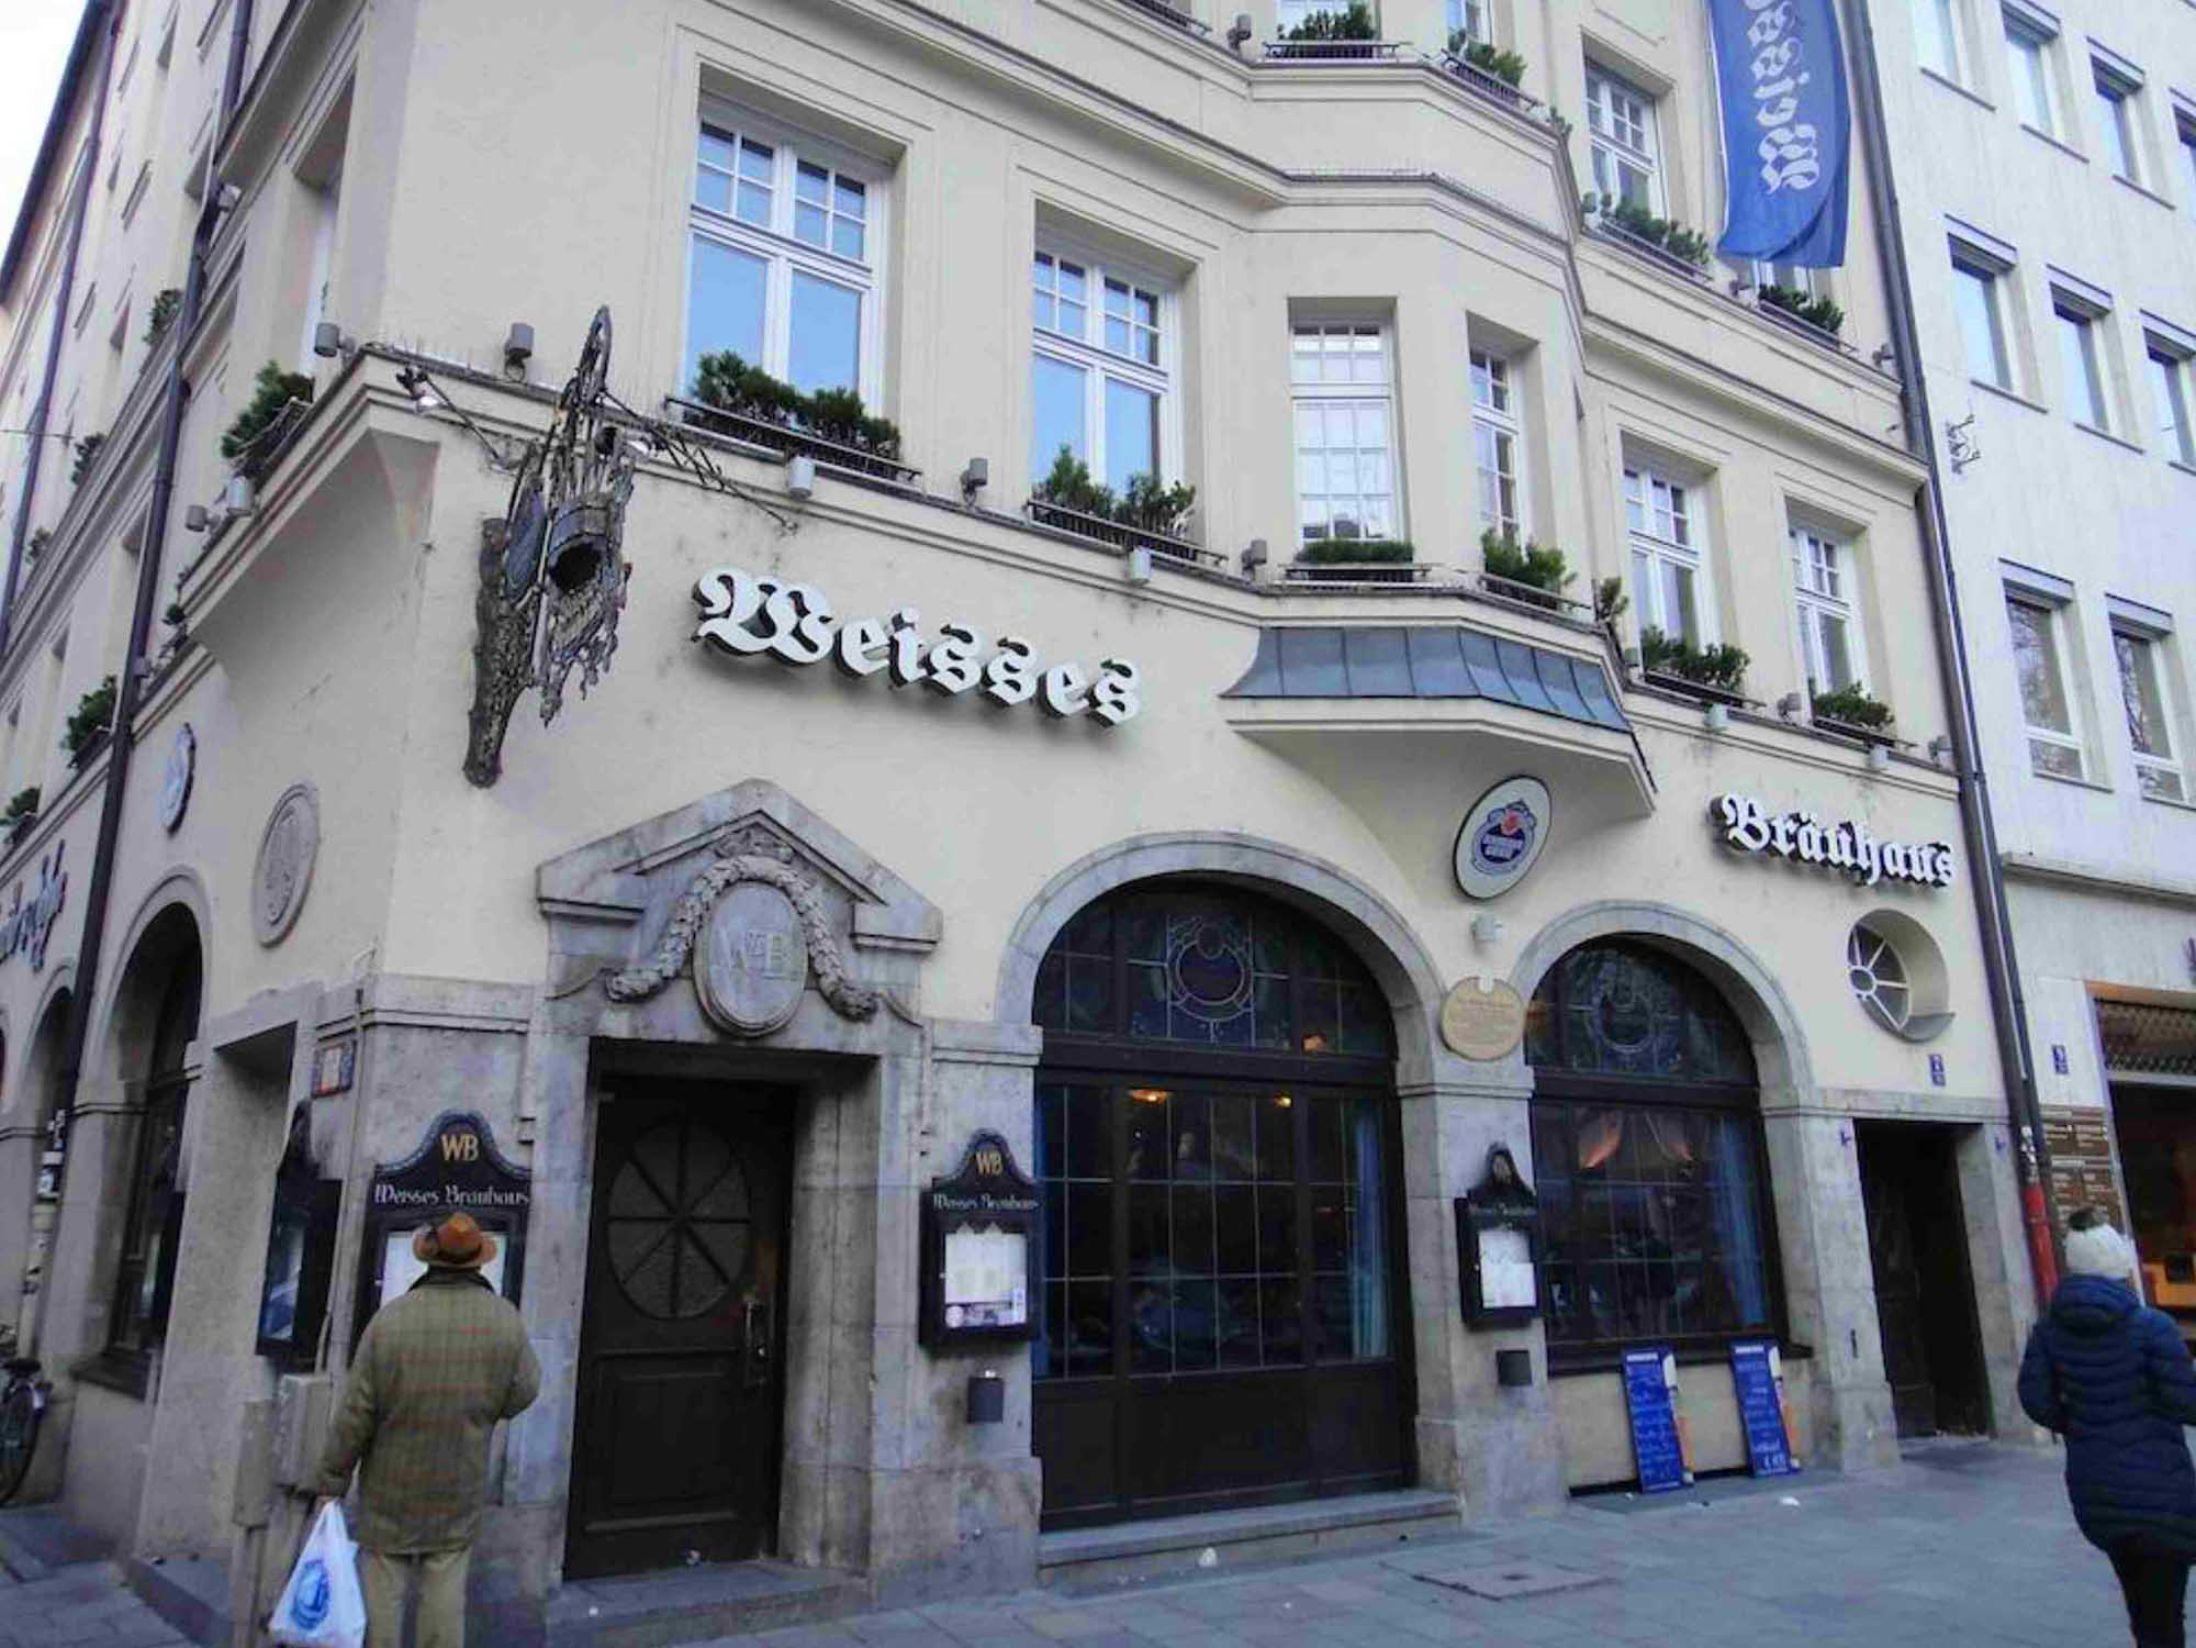 Schneider Bräuhaus - Best Bars in Munich